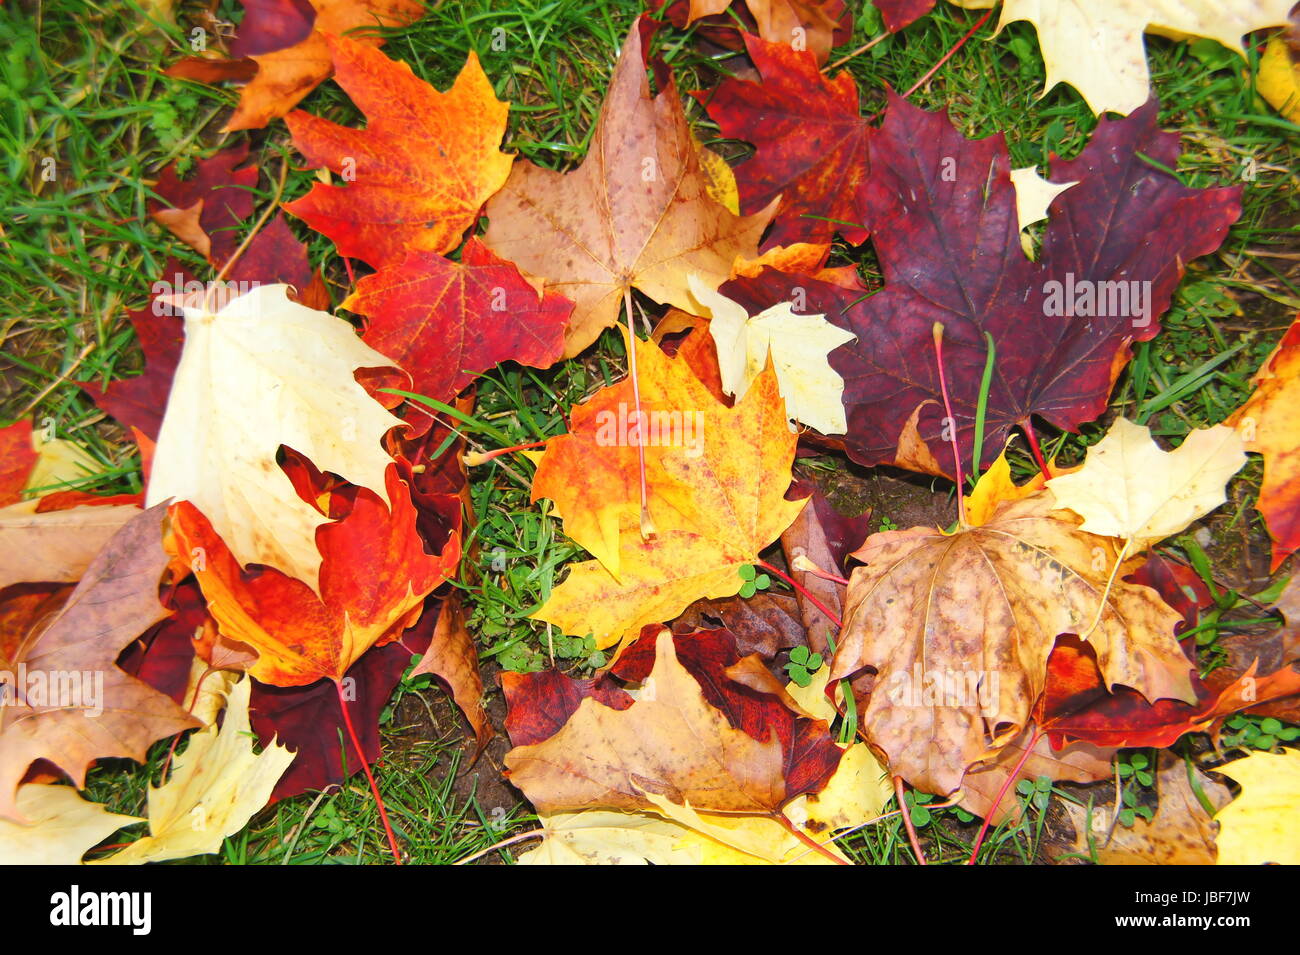 rot gelbe Ahornblätter im Herbst im grünen Gras Stock Photo